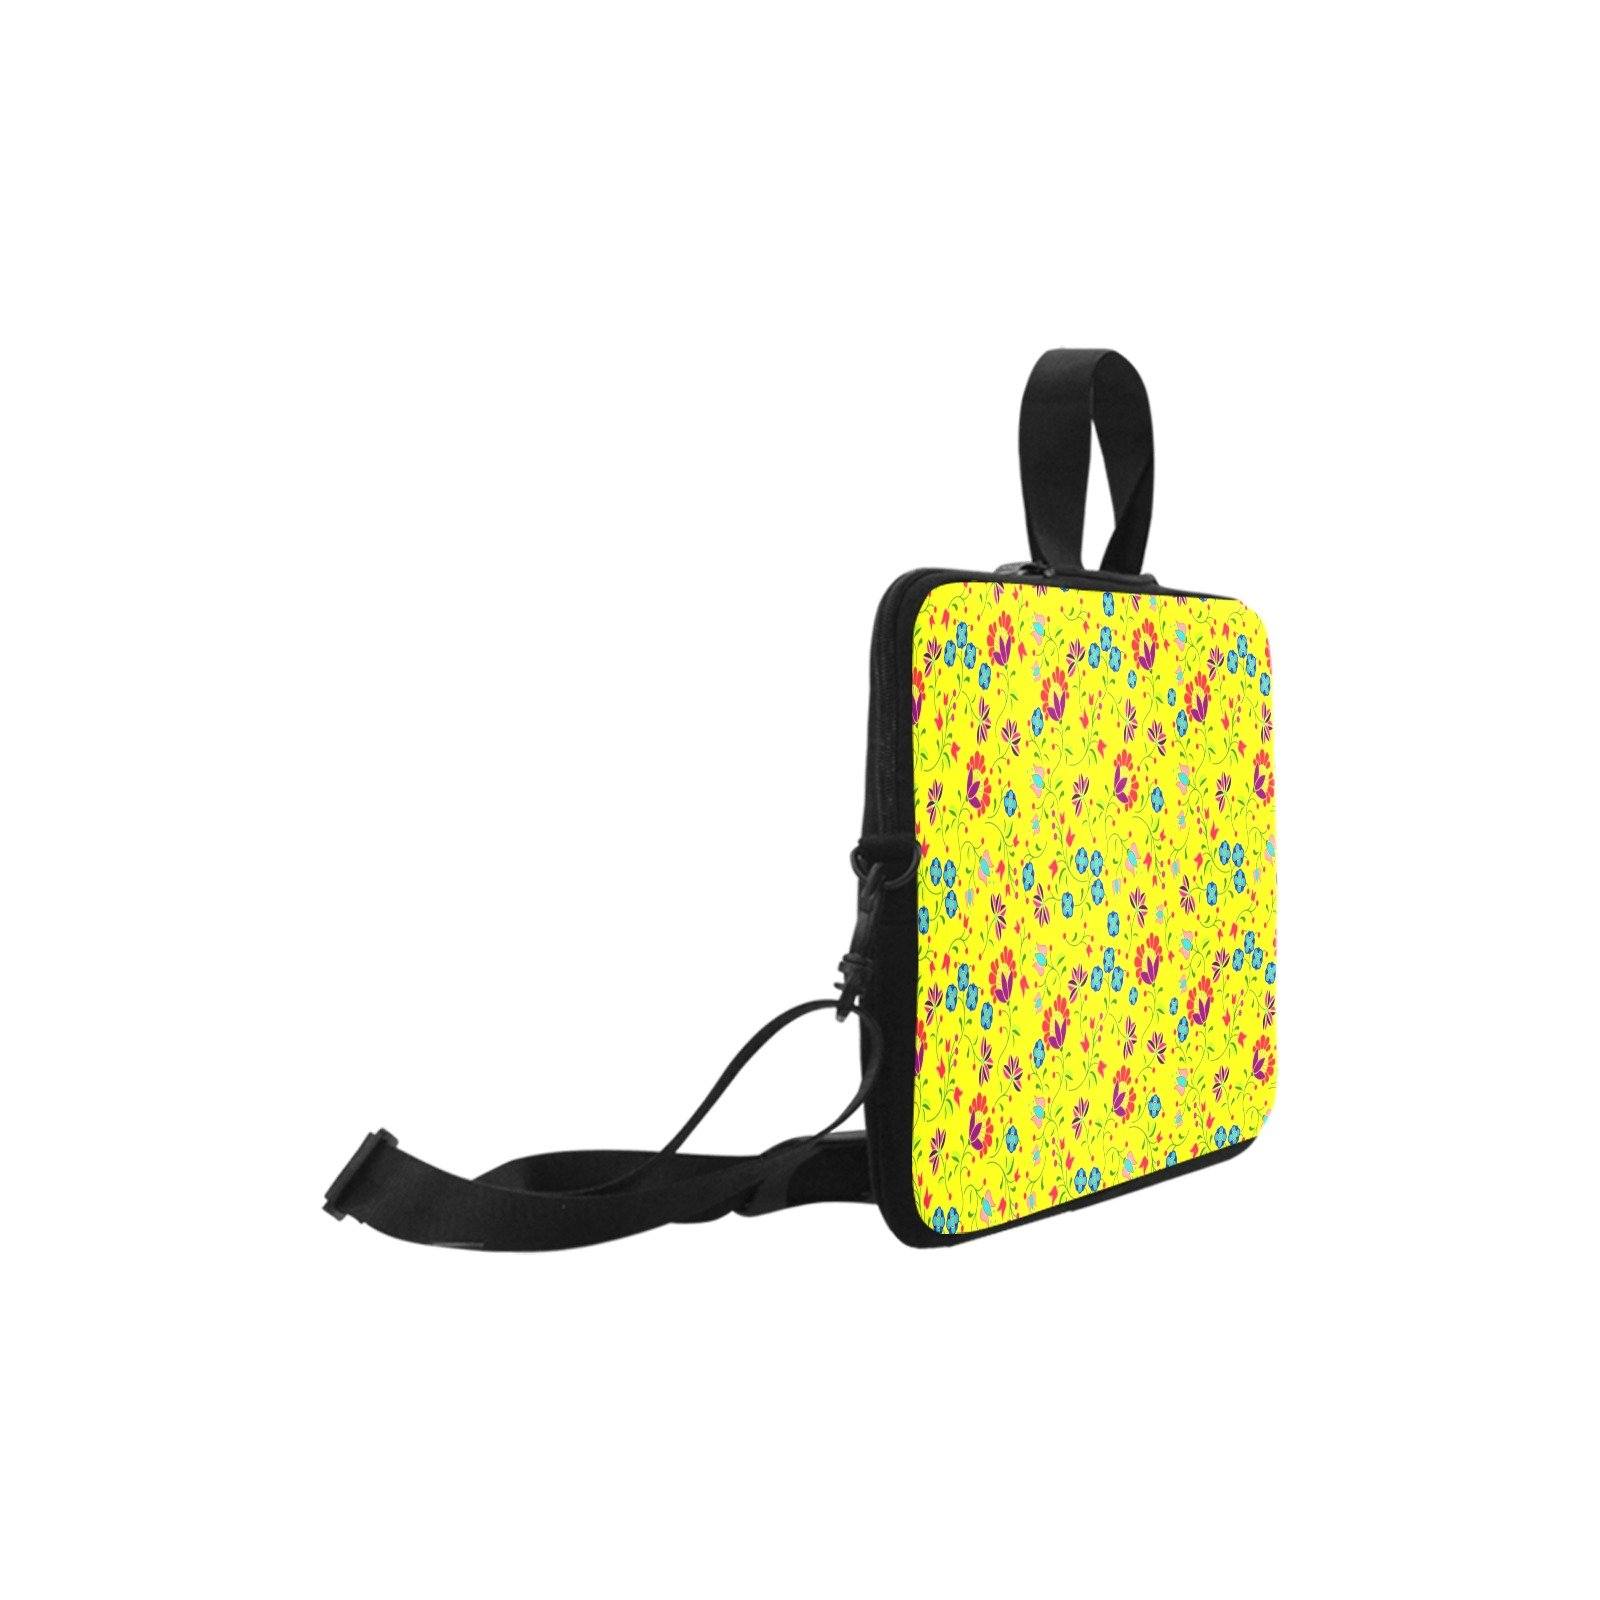 Fleur Indigine Mais Laptop Handbags 11" bag e-joyer 